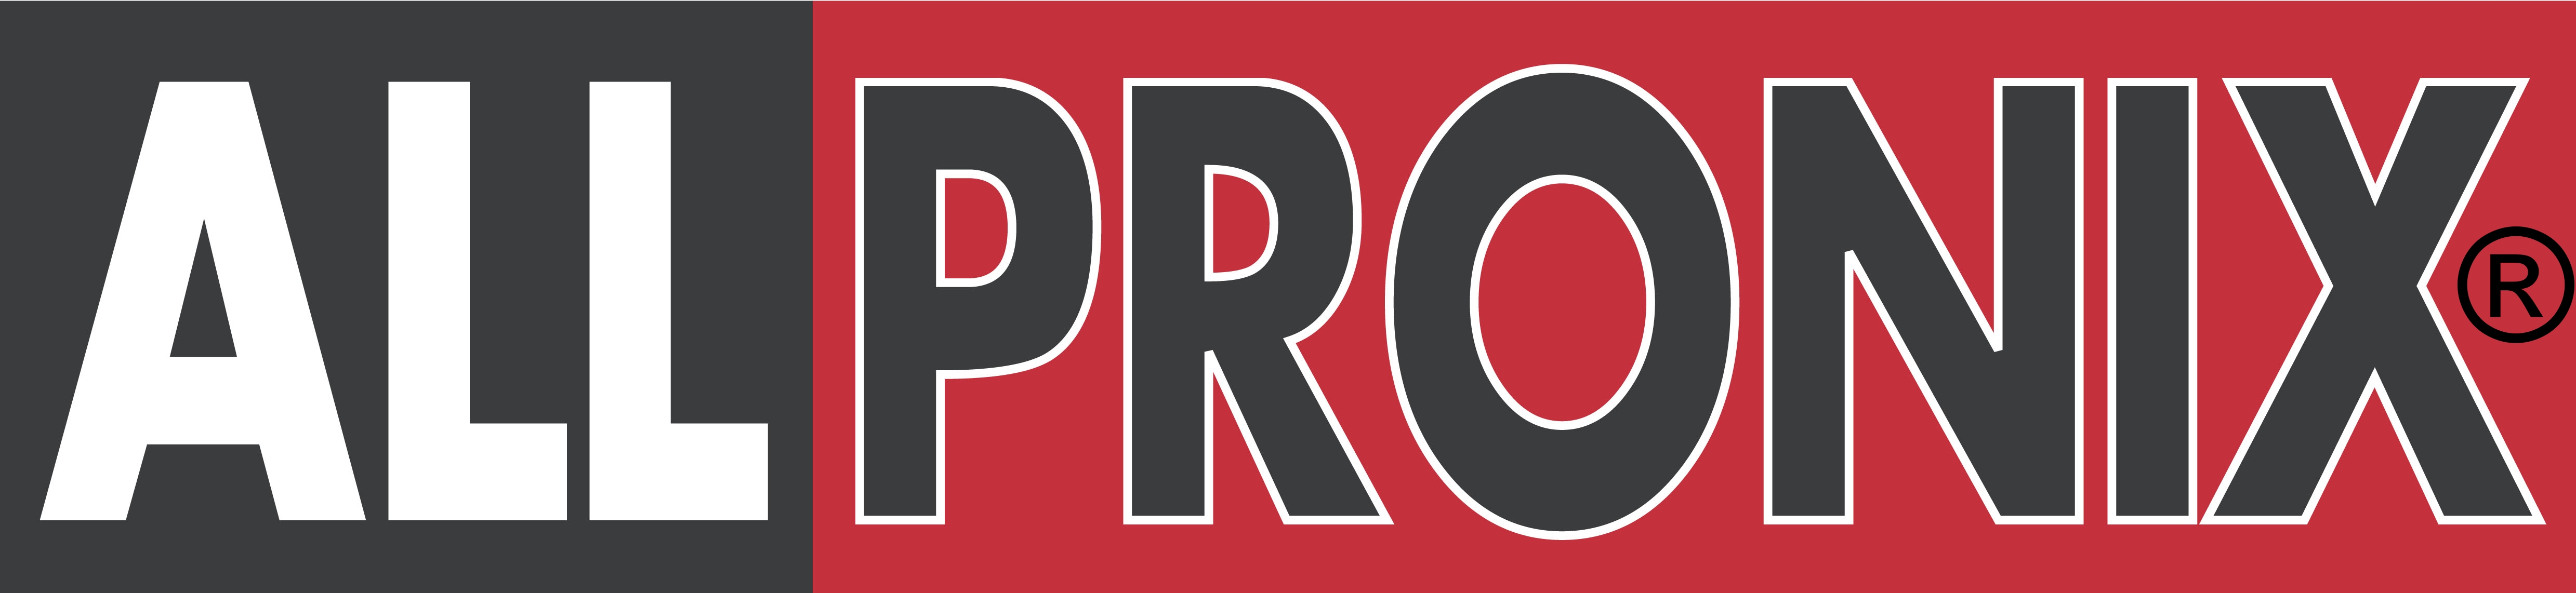 Allpronix (Pty) Ltd logo